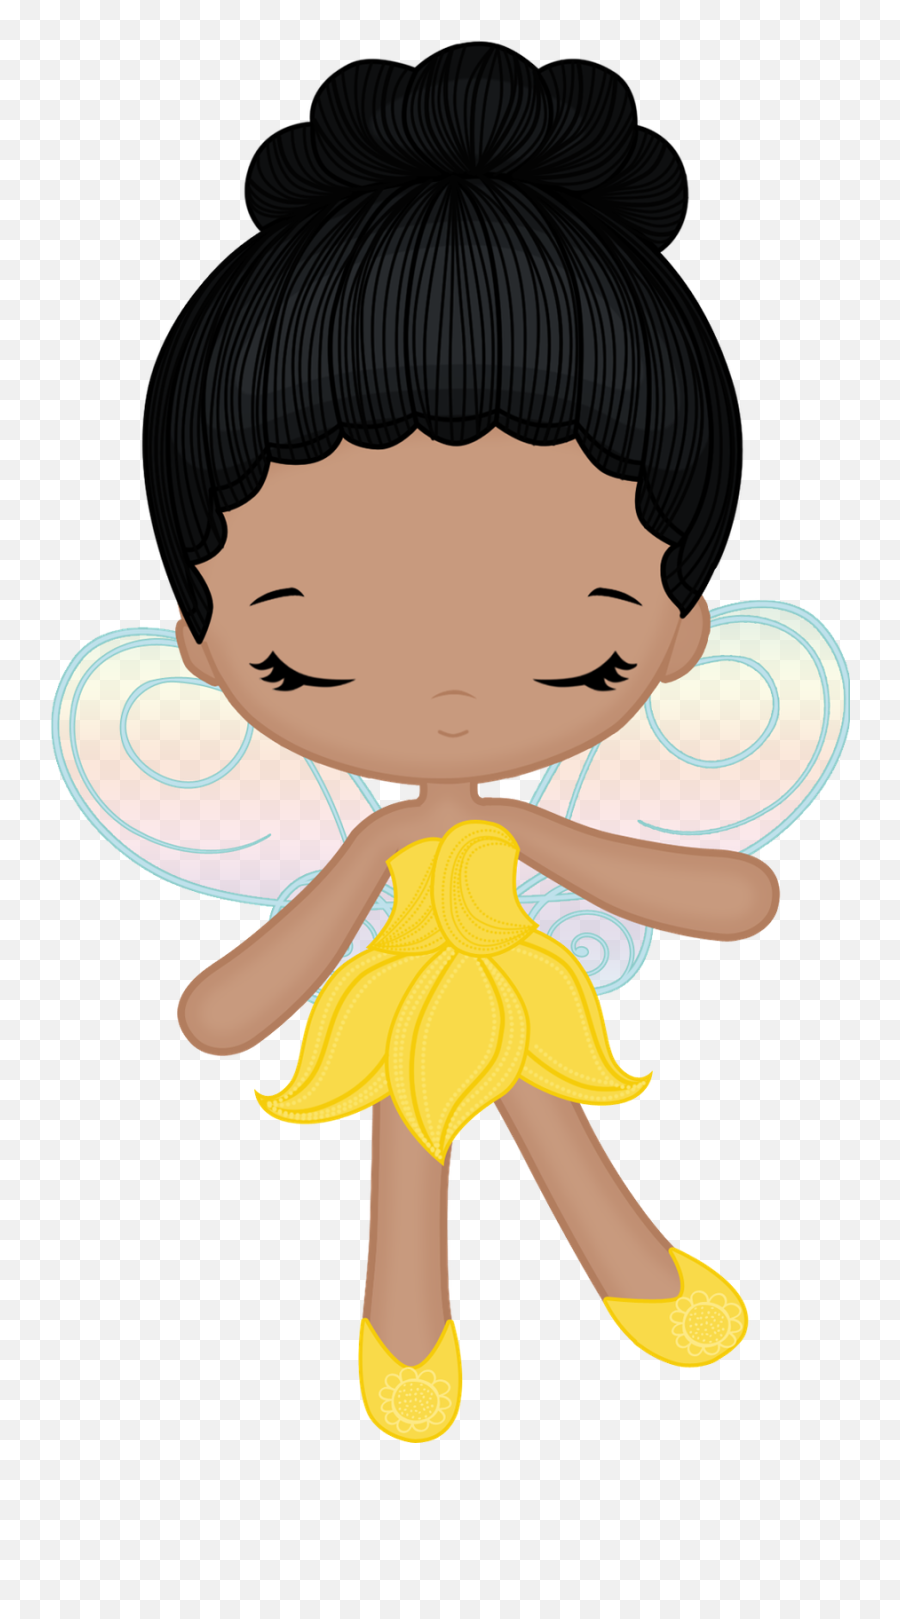 120 Princess Clipart Ideas - Desenho De Fada Negra Emoji,Black Haired Princess Emoji